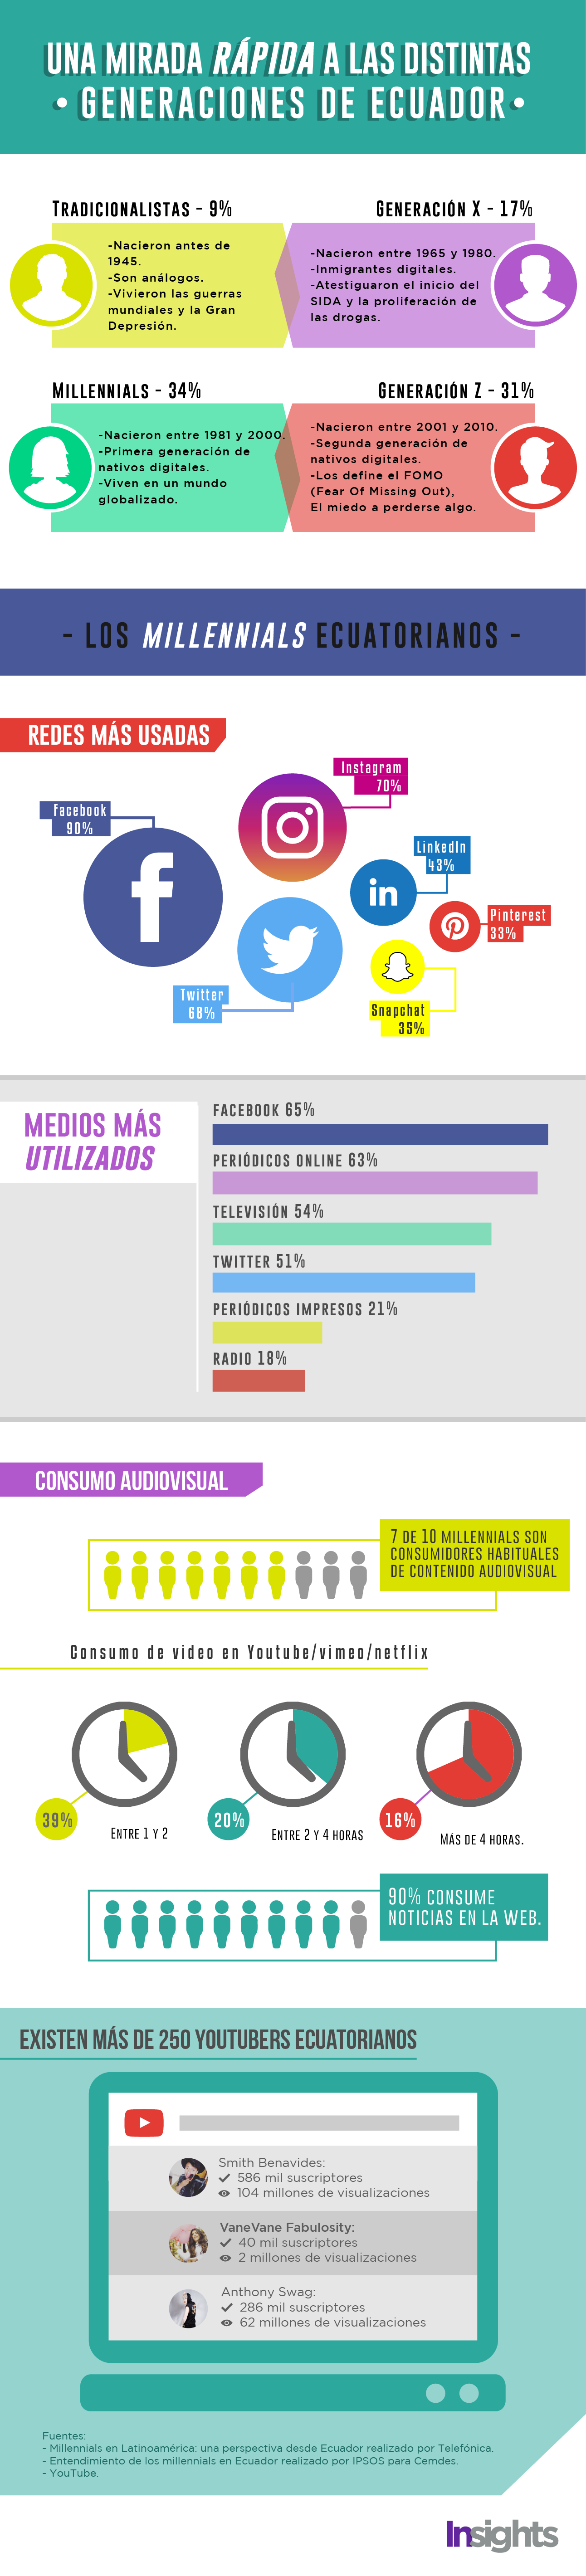 millennials ecuatorianos infografia